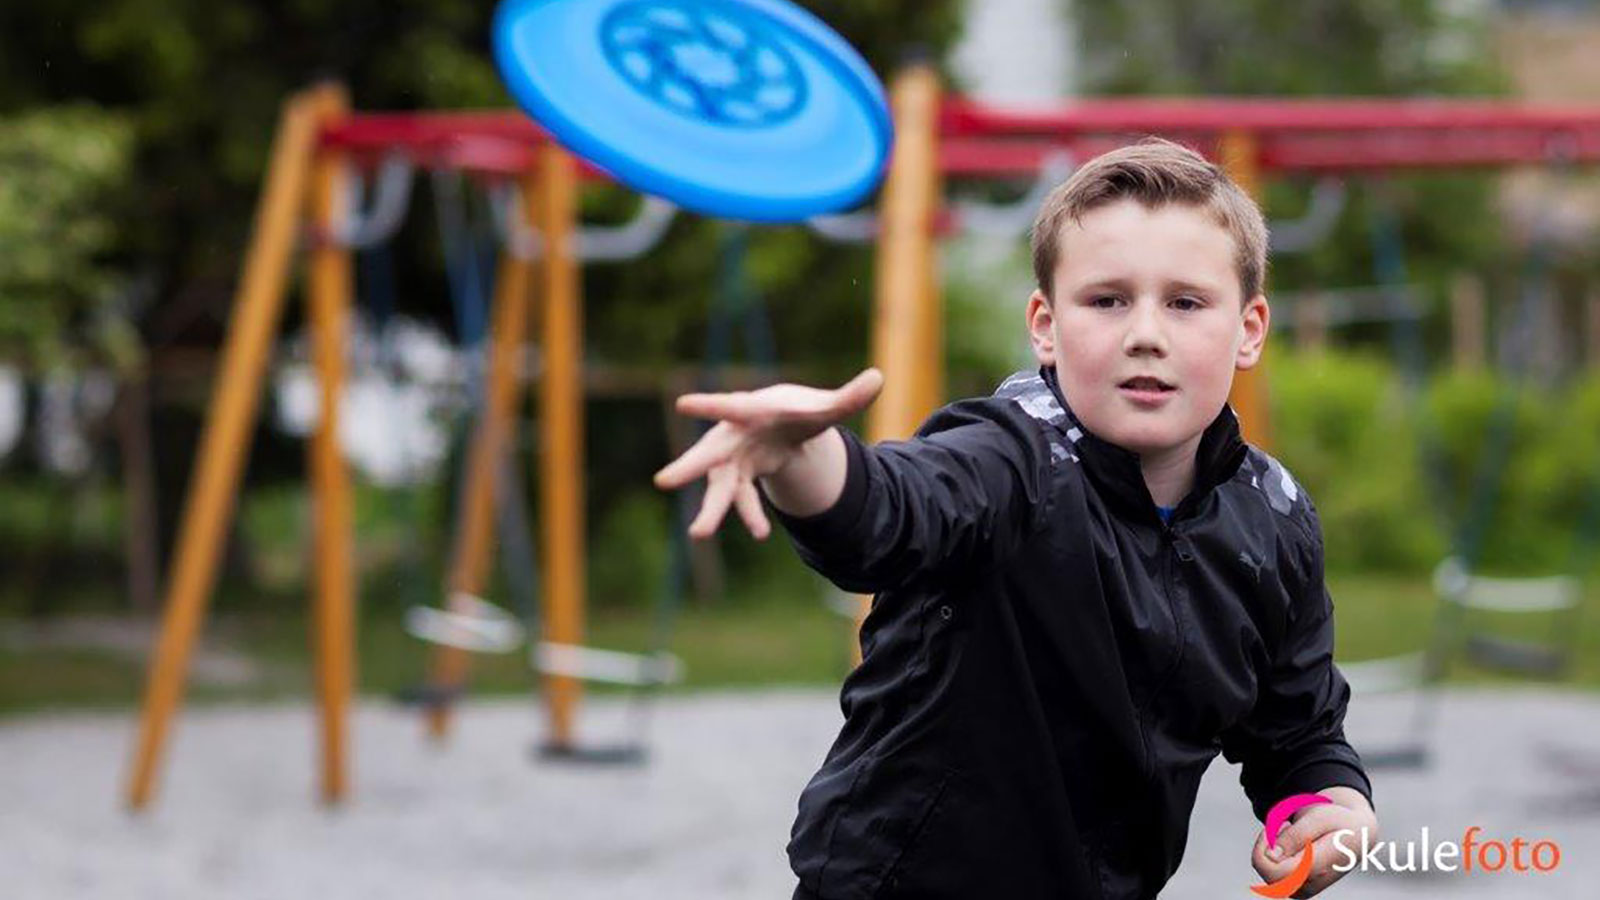 Boy throwing a frisbee